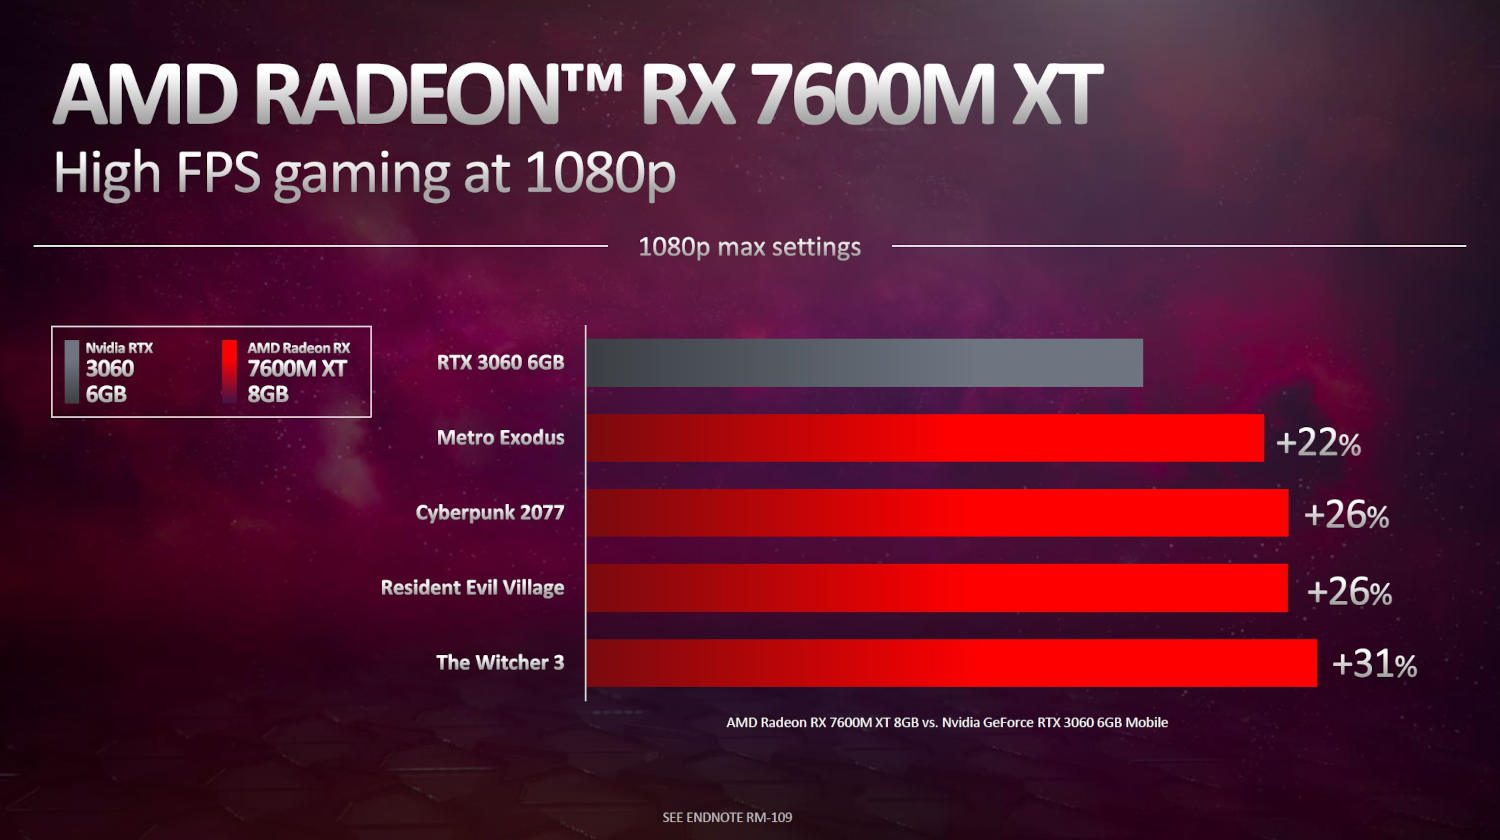 wydajność radeona rx 7600m xt w grach